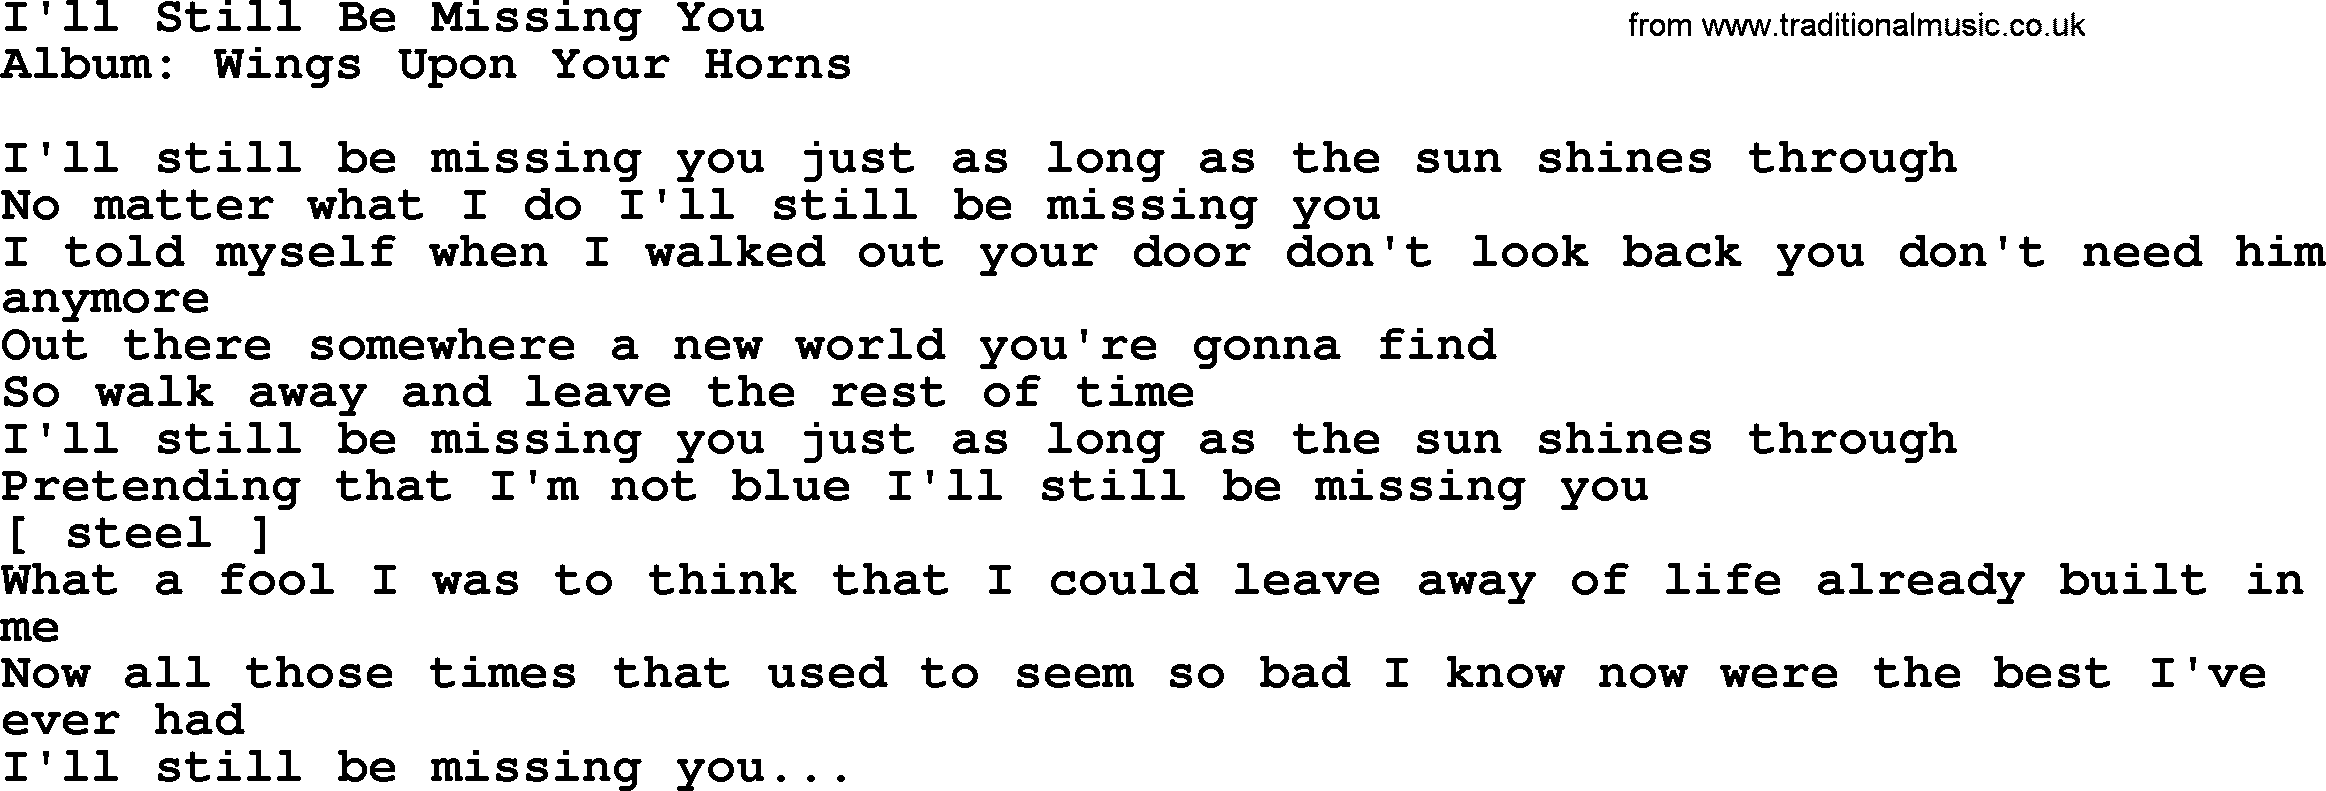 Loretta Lynn song: I'll Still Be Missing You lyrics